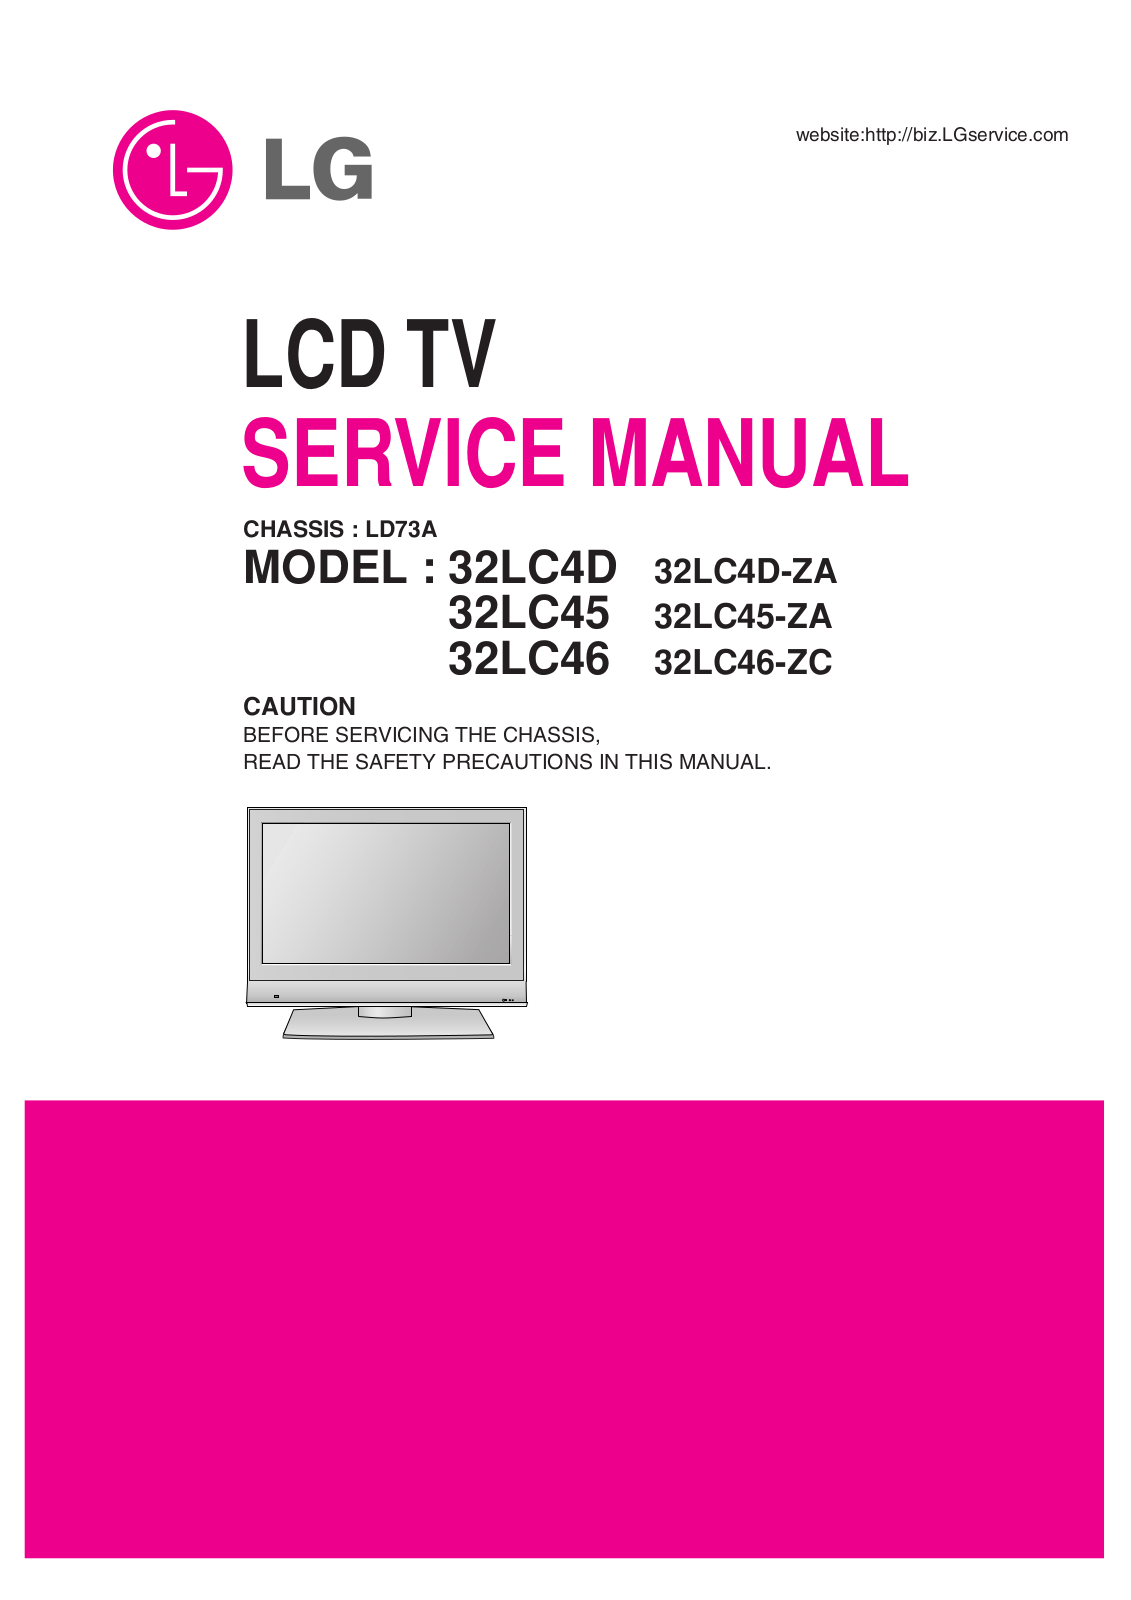 LG LD73A, 32LC46-ZC, 32LC46, 32LC45-ZA, 32LC45 Service Manual